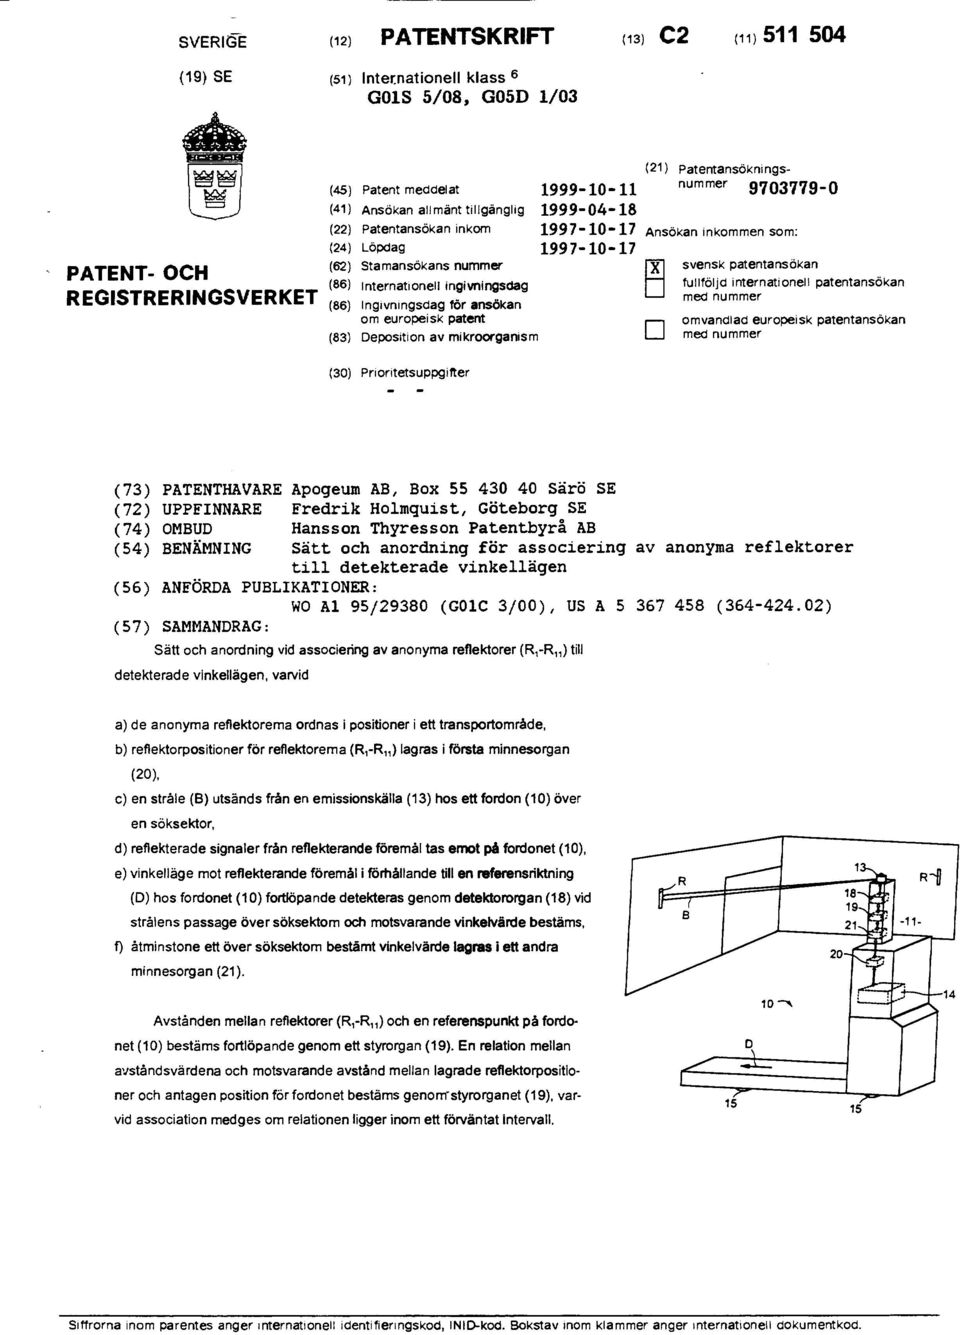 svensk patentansökan (86) Internationell ingivningsdag fullföljd internationell patentansökan med nummer om europeisk patent (83) Deposition av mikroorganism omvandlad europeisk patentansökan med